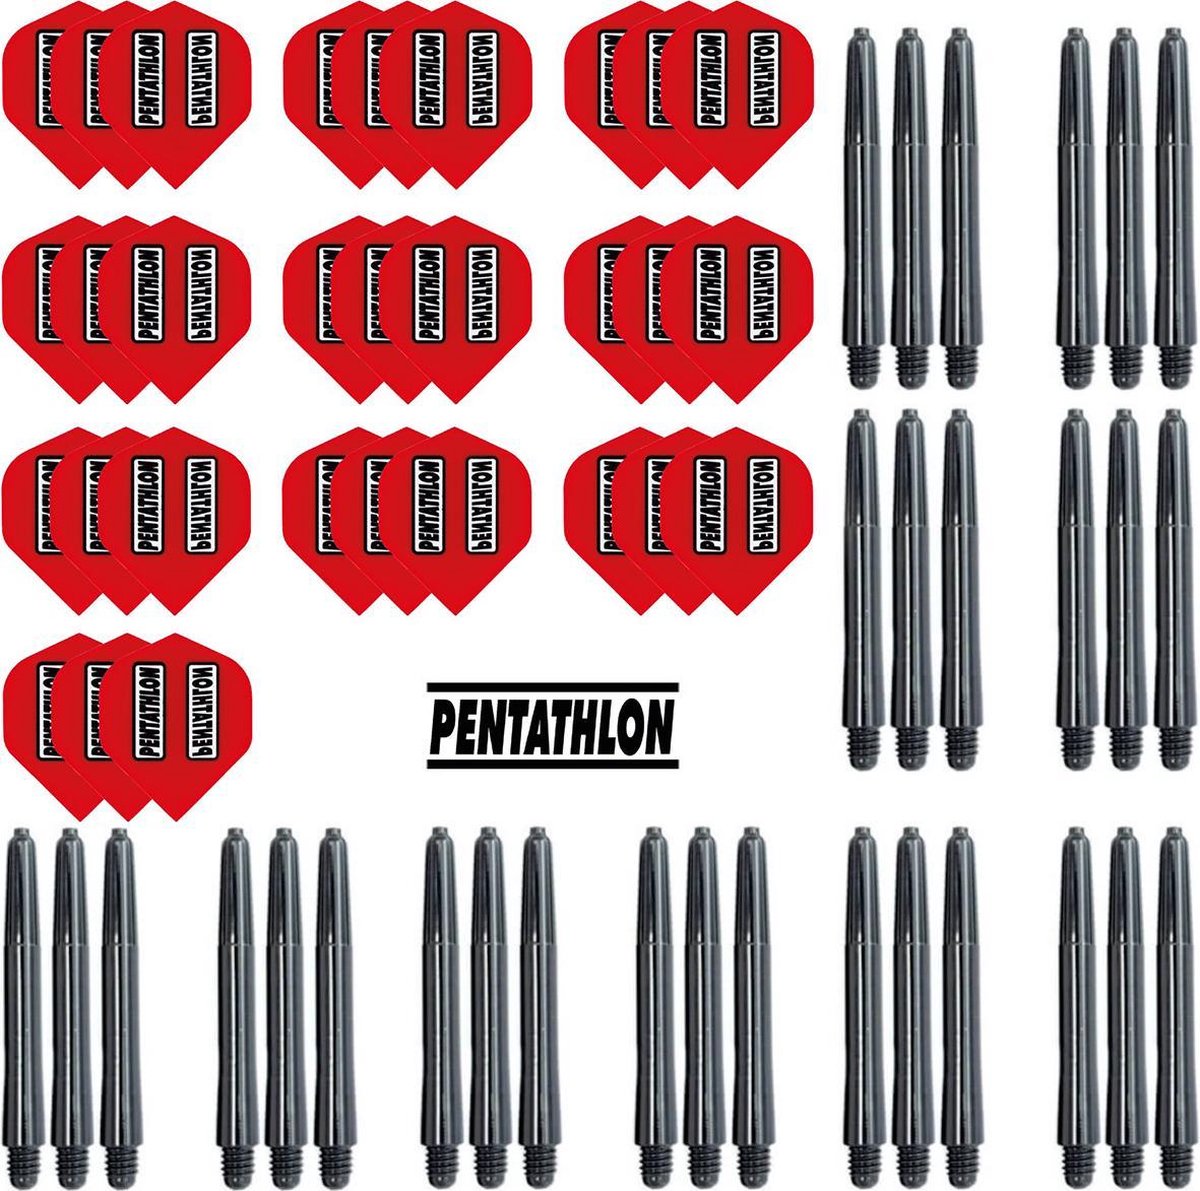 Dragon Darts - 10 sets (30 stuks) Pentathlon darts flights - super stevig - rood - incl. 10 sets (30 stuks) - medium - darts shafts - zwart